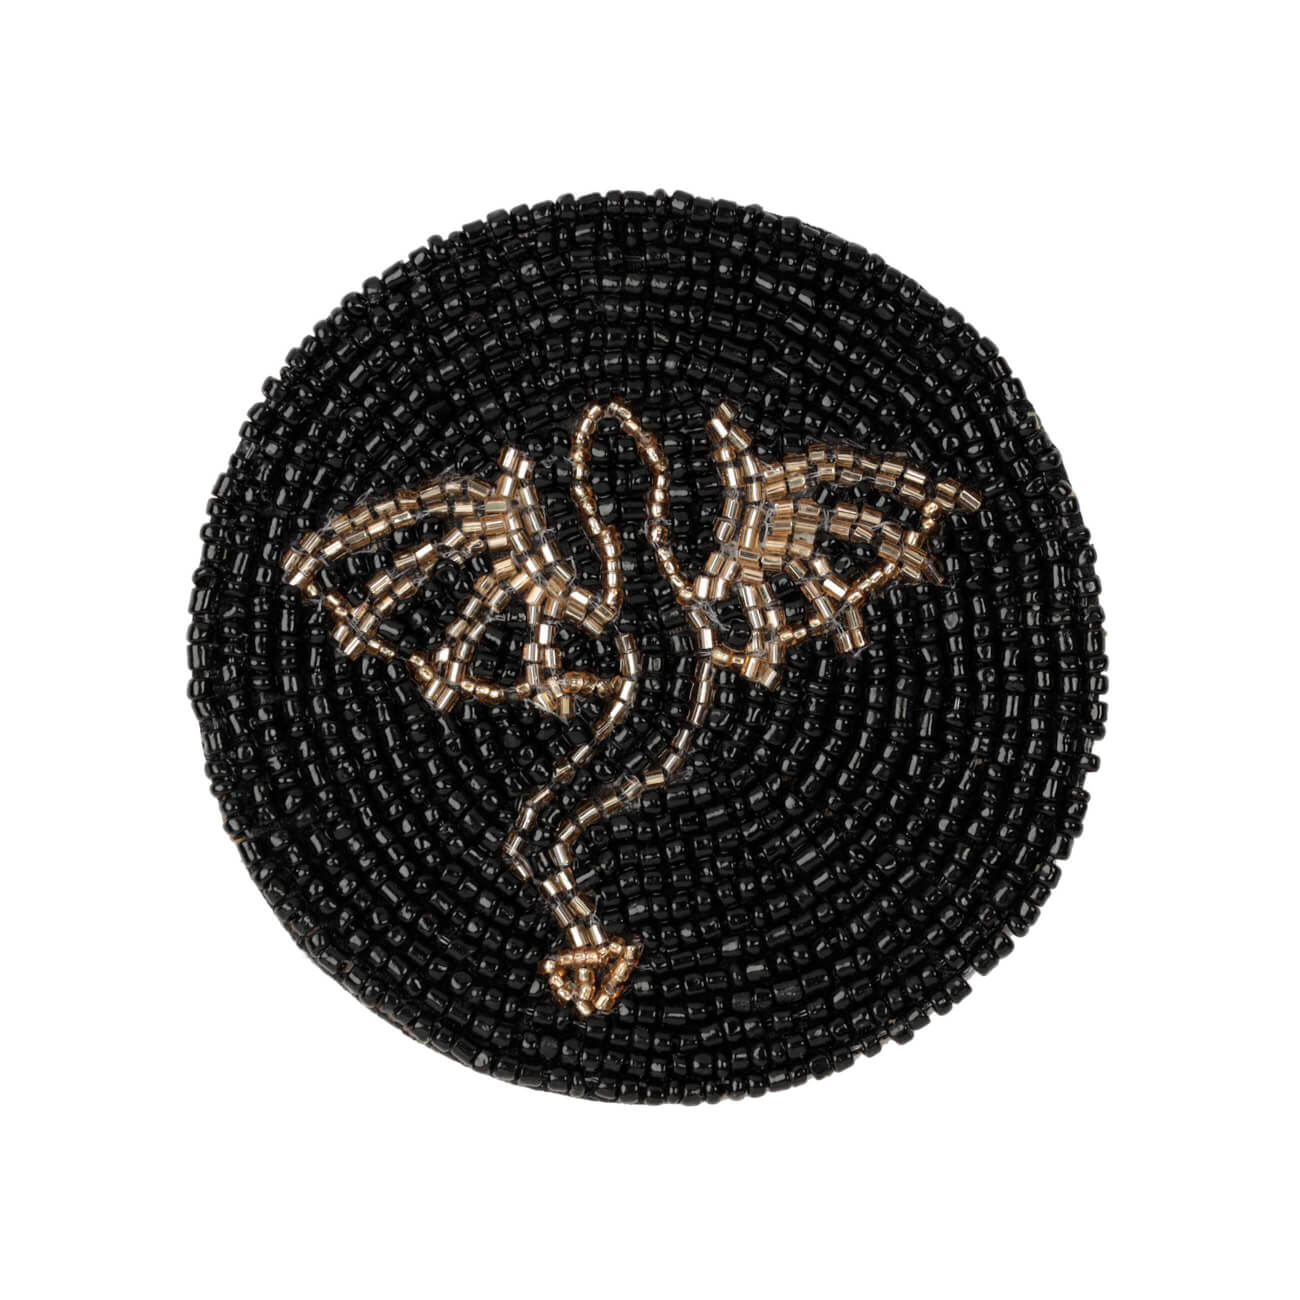 Подставка под кружку, 10 см, бисер, круглая, черная, Дракон, Art beads бисер чехия preciosa 10 0 5 гр 8289